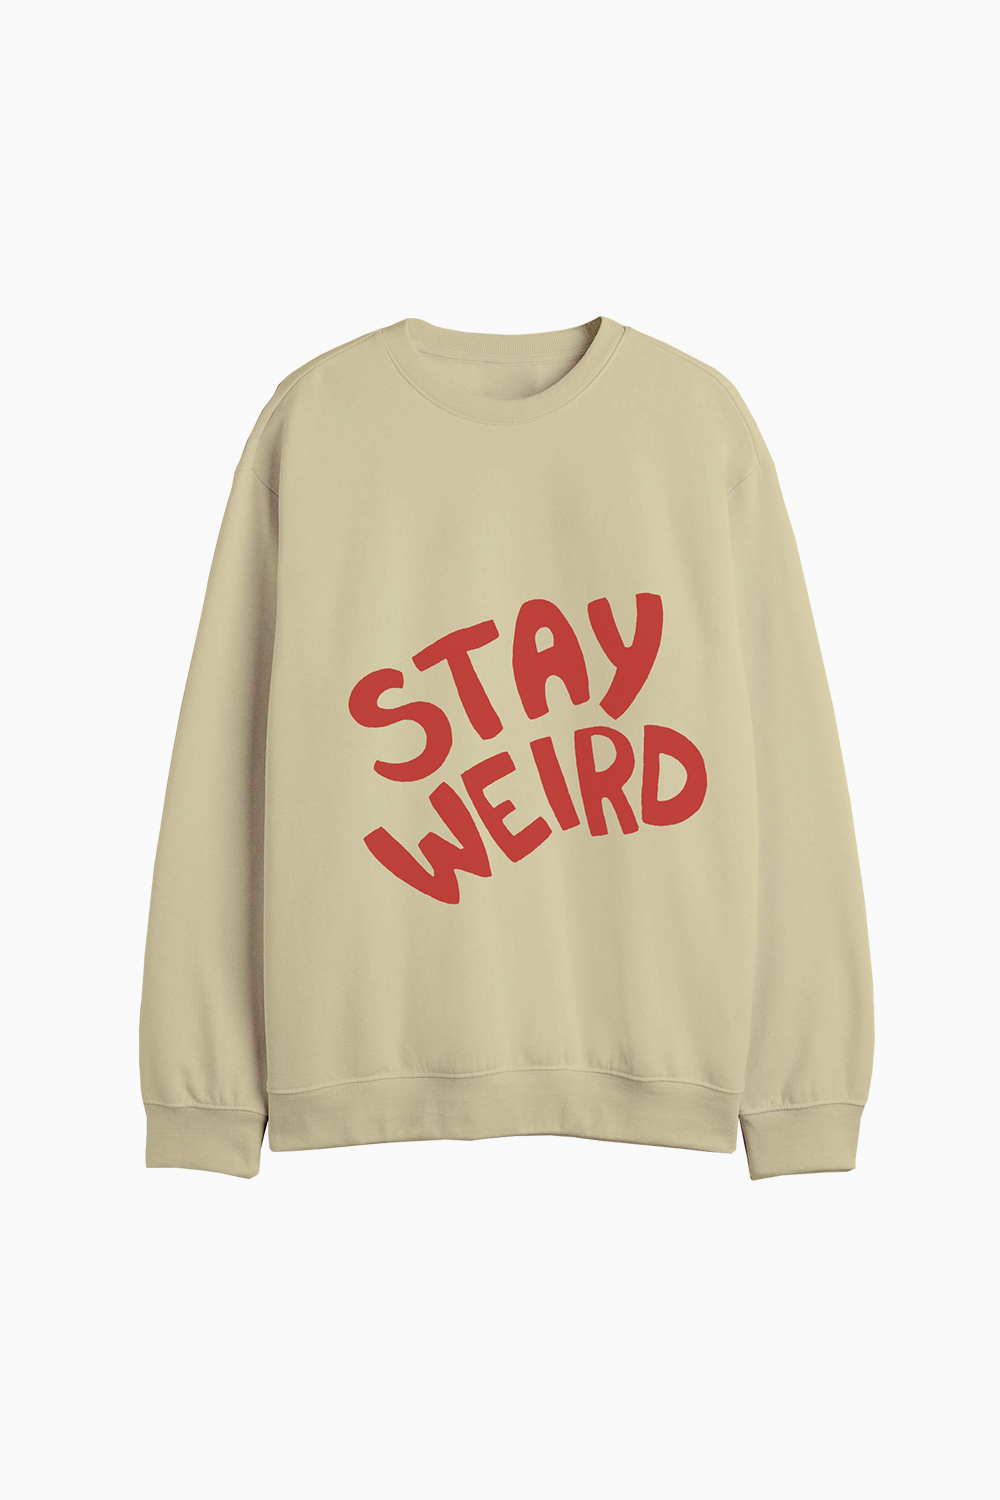 STAYWEIRD sweatshirt